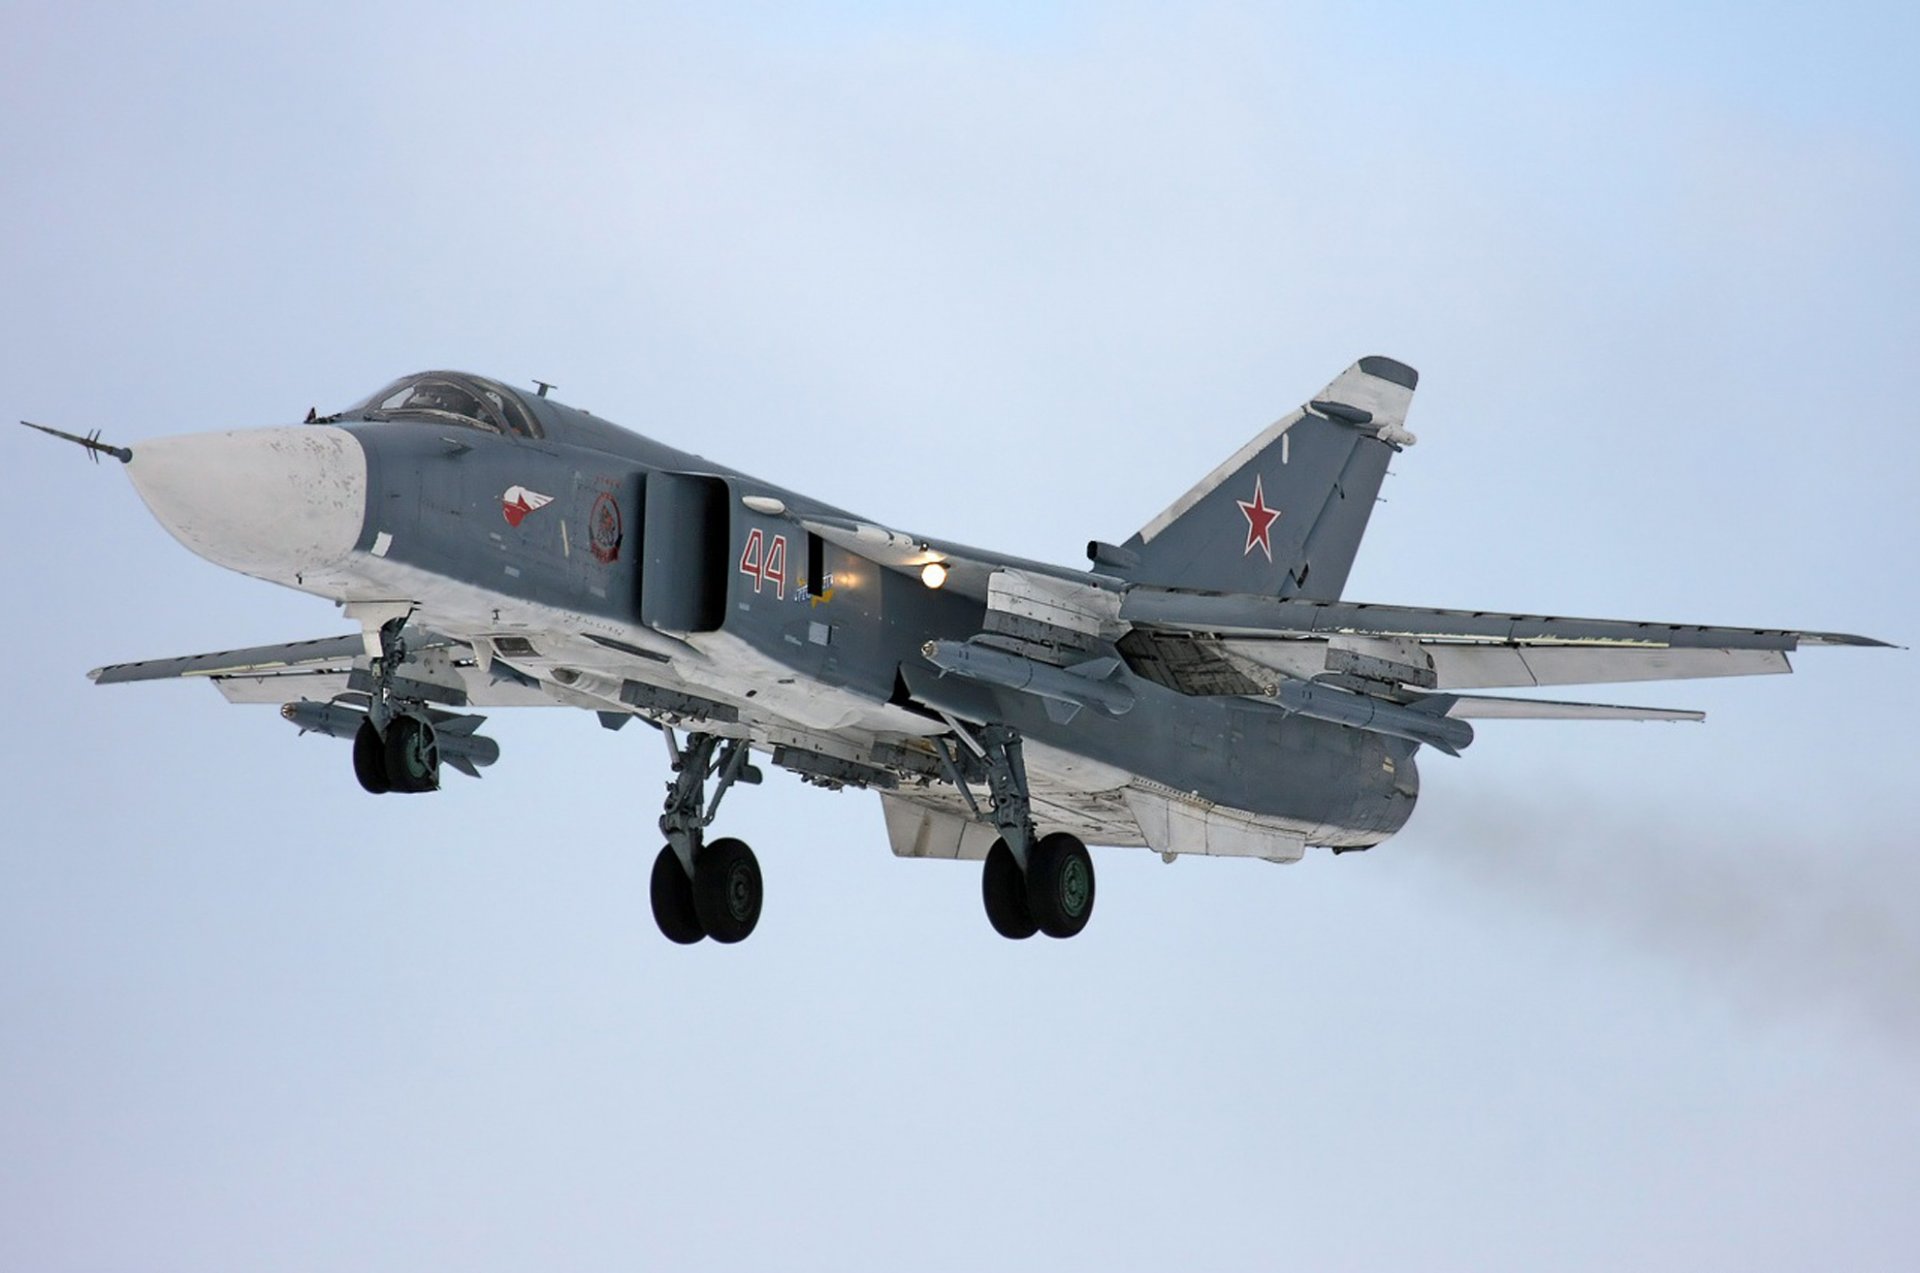 сухой су-24 бомбардировщик ввс россии посадка шасси огни вооружение су-24